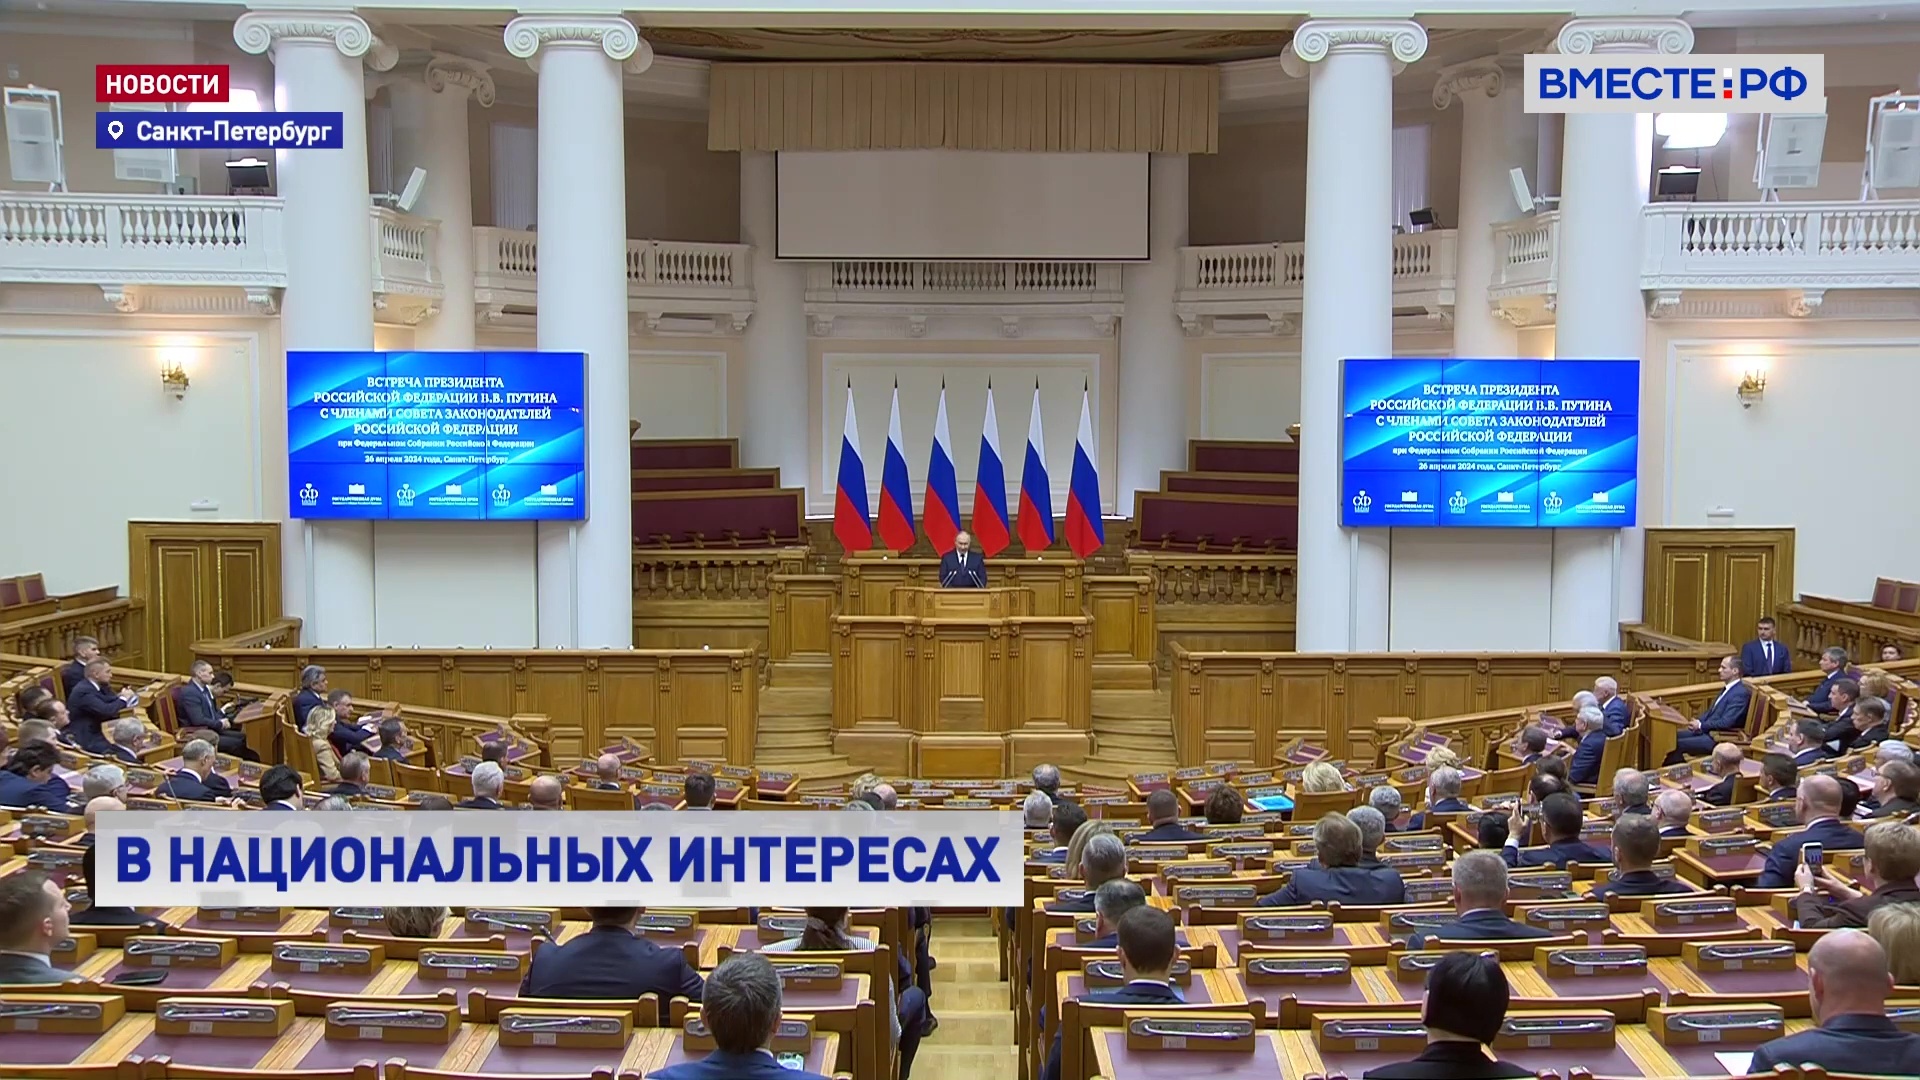 Российские парламентарии многое сделали для укрепления влияния РФ в мире, заявил Путин